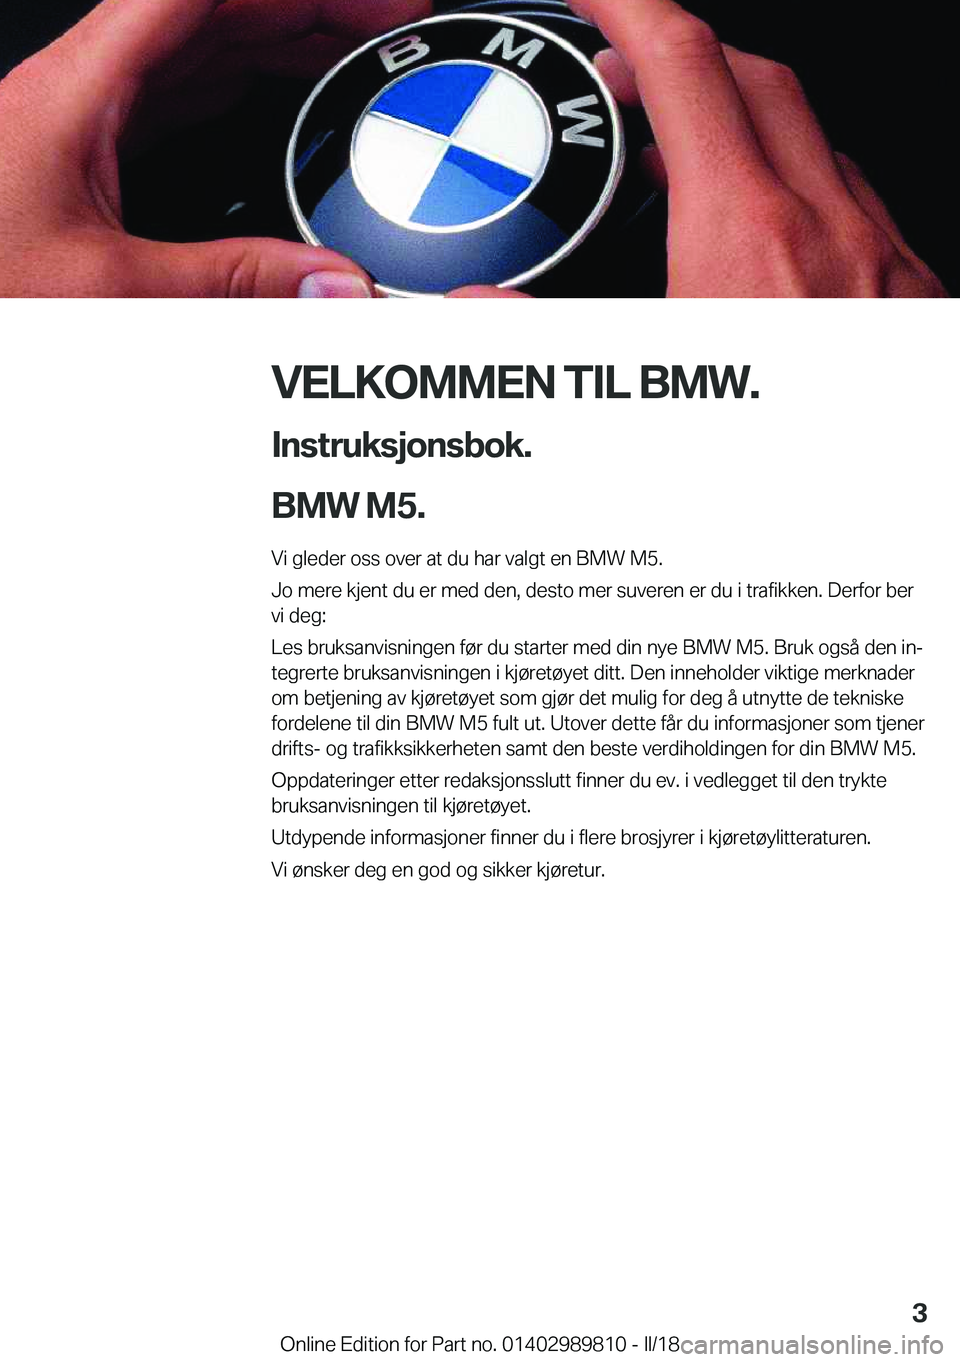 BMW M5 2018  InstruksjonsbØker (in Norwegian) �V�E�L�K�O�M�M�E�N��T�I�L��B�M�W�.�I�n�s�t�r�u�k�s�j�o�n�s�b�o�k�.
�B�M�W��M�5�.
�V�i� �g�l�e�d�e�r� �o�s�s� �o�v�e�r� �a�t� �d�u� �h�a�r� �v�a�l�g�t� �e�n� �B�M�W� �M�5�. �J�o� �m�e�r�e� �k�j�e�n�